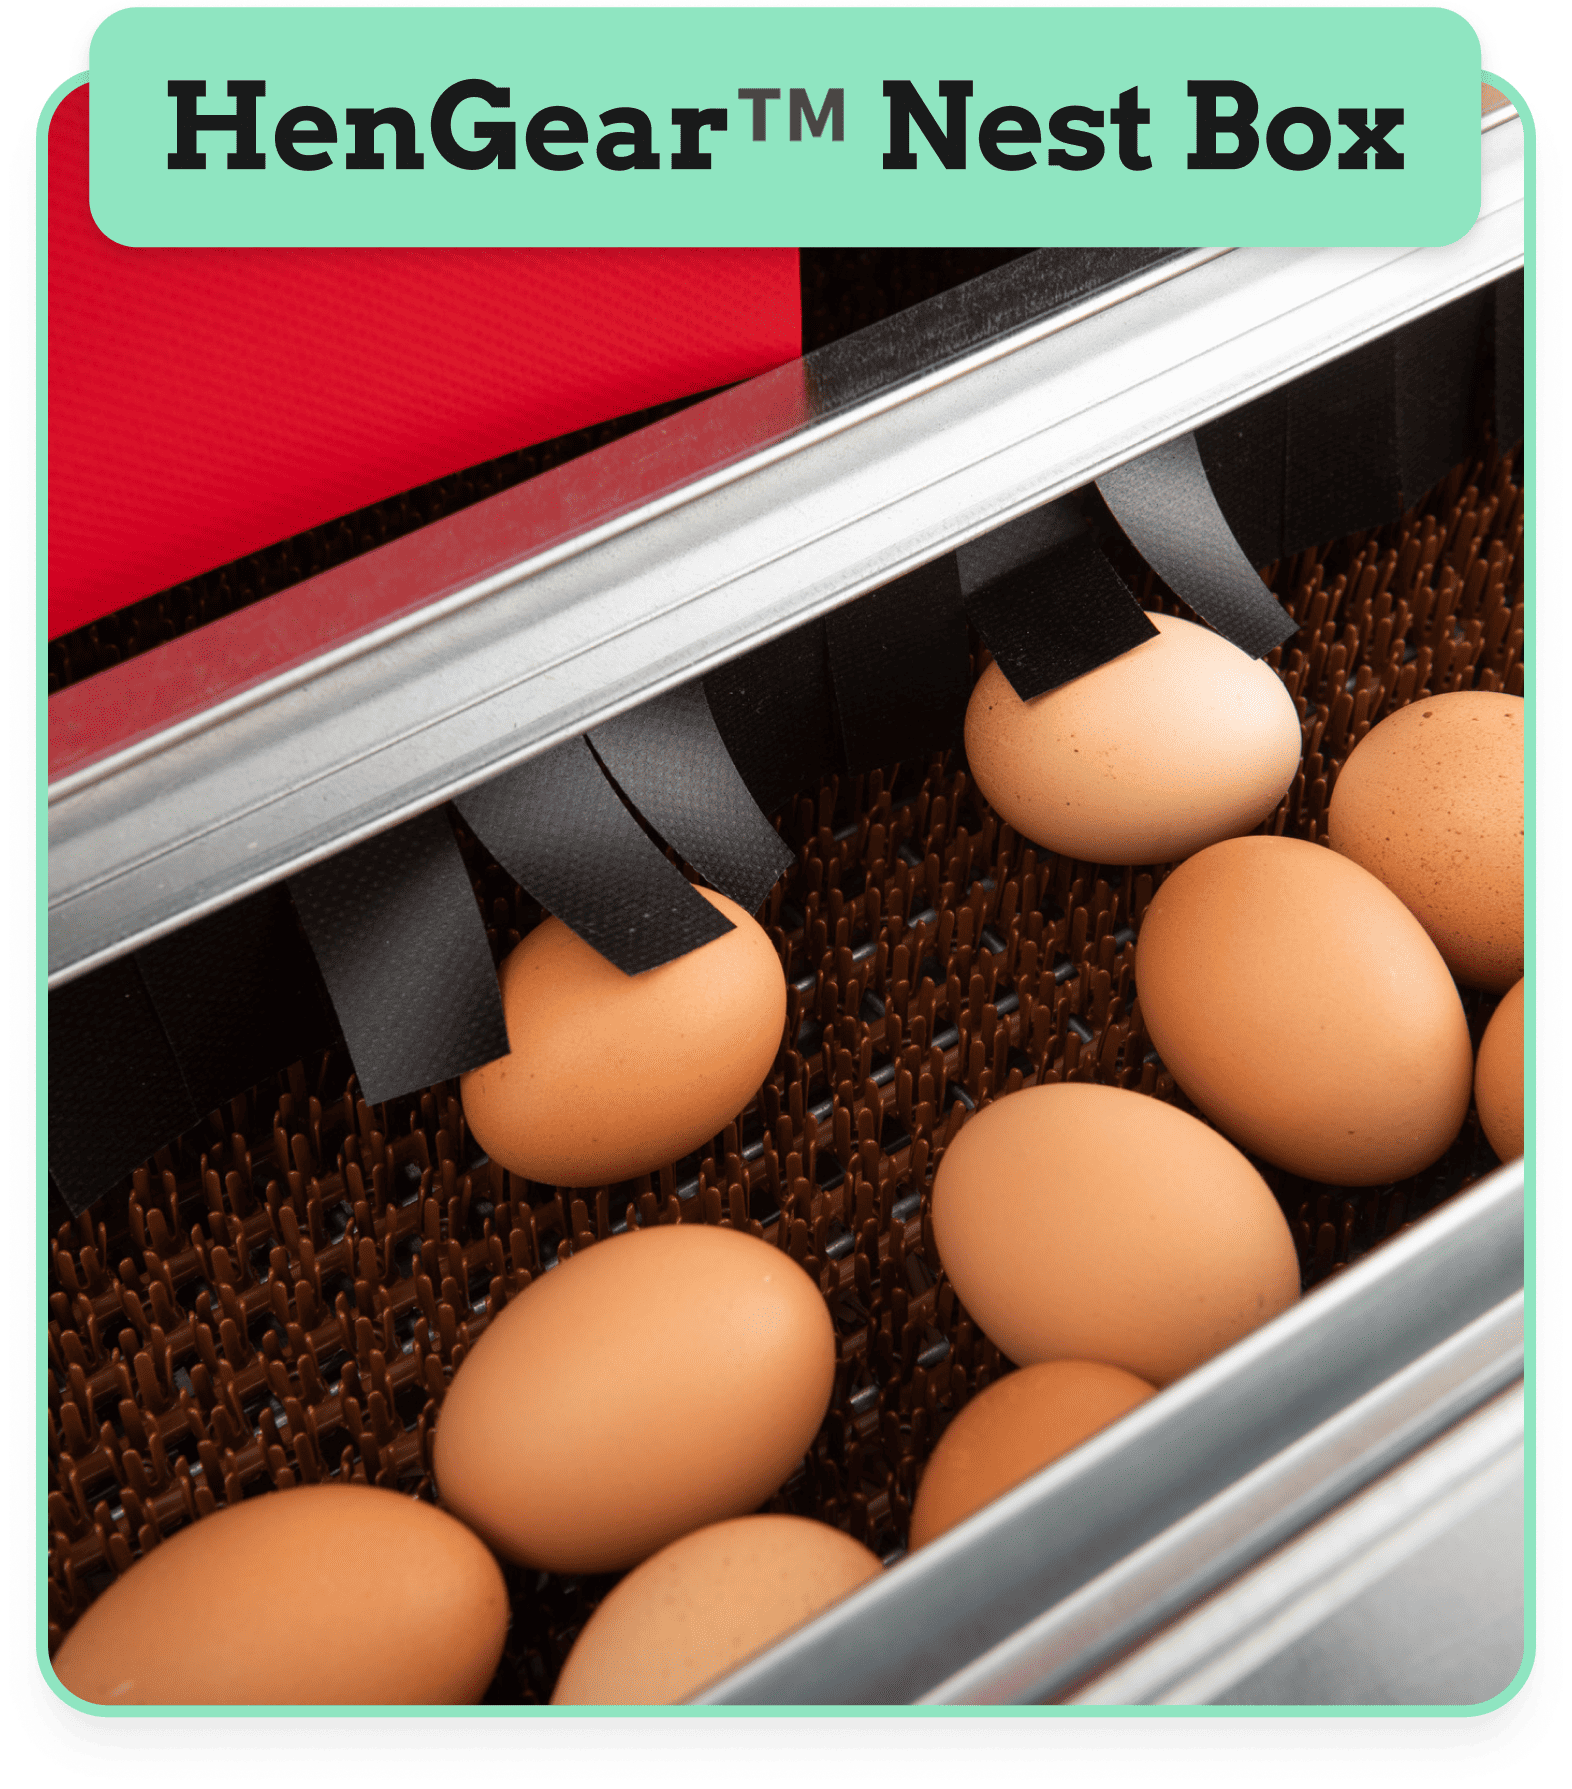 Hen Gear Nest Box & their TM technology.